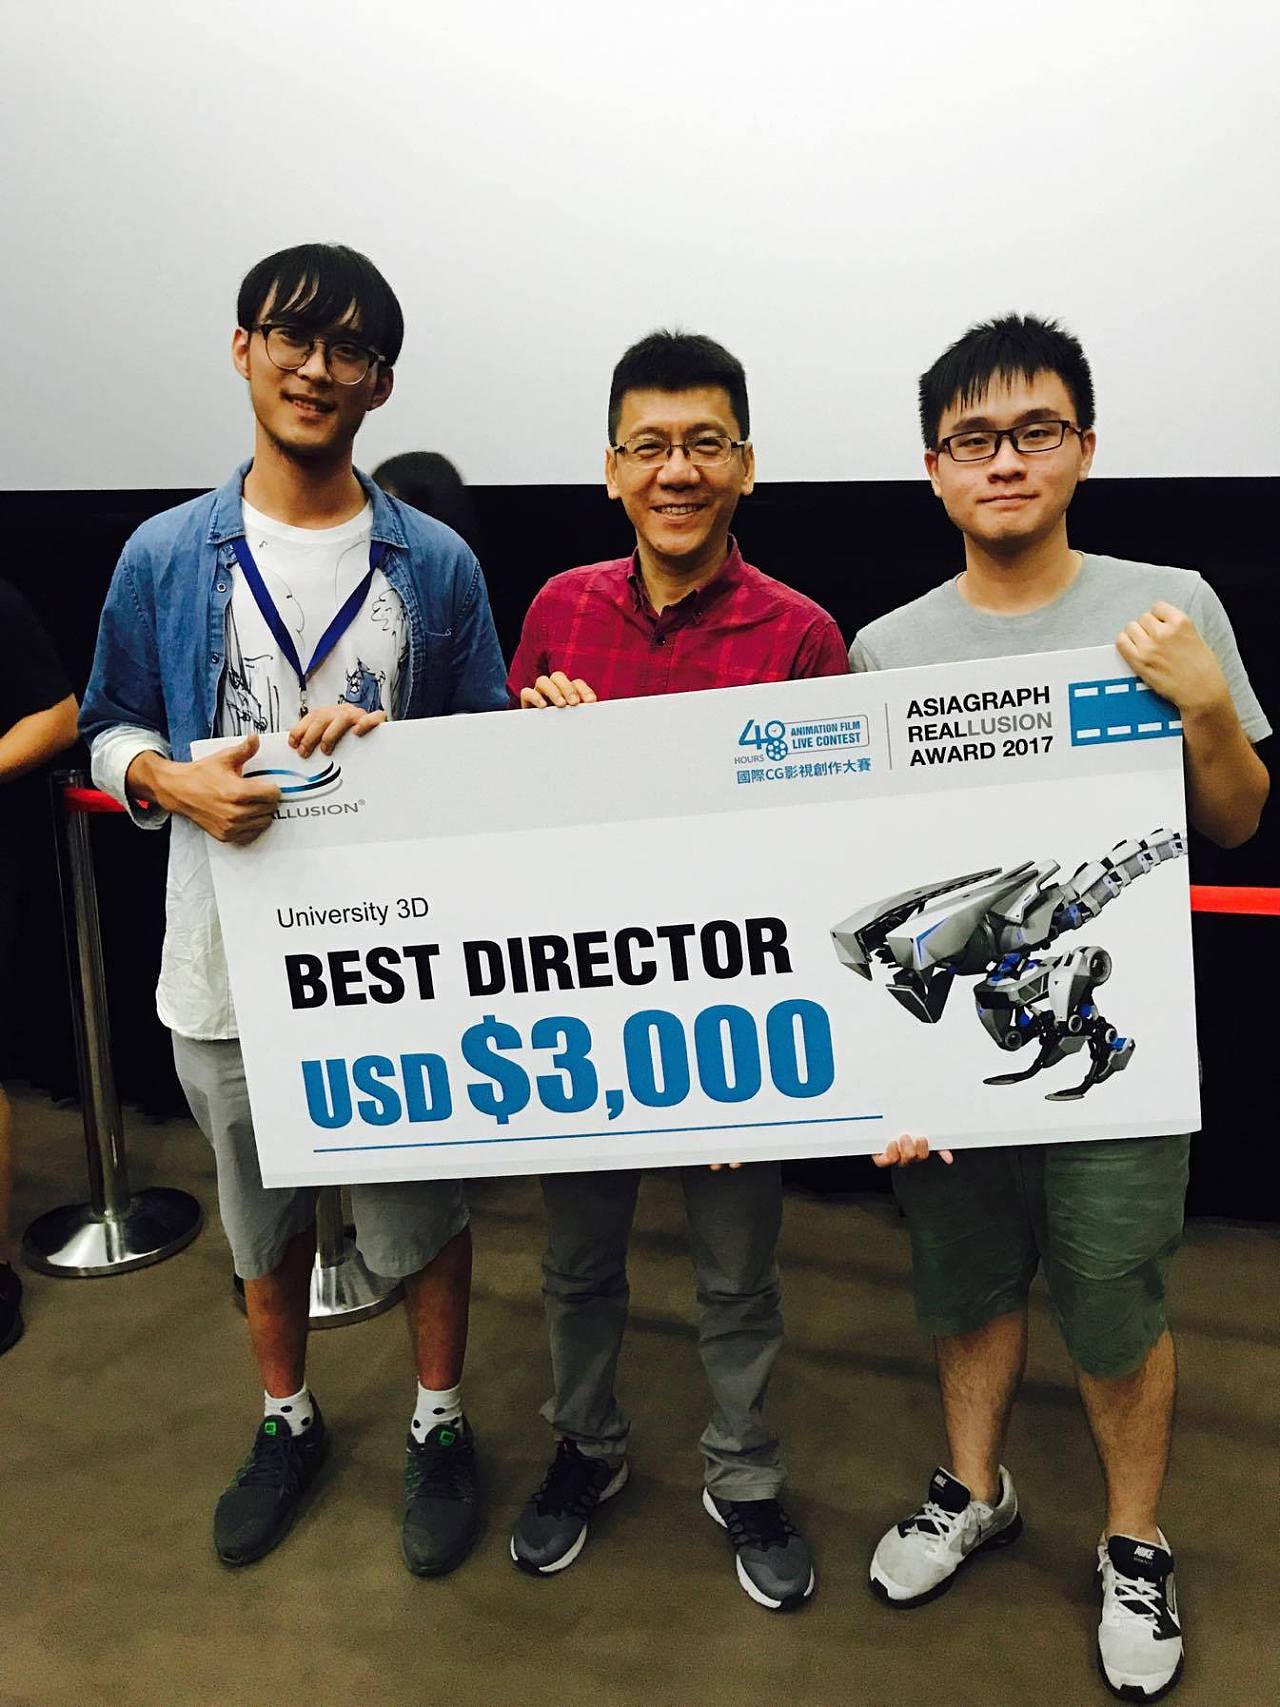 制作团队与颁奖嘉宾——BaseFX副总裁谢宁的合影&lt;br&gt;BaseFX是国内第一批参与好莱坞电影的特效公司，很高兴可以有这样的机会与这位在中国视效行业做出杰出贡献的前辈交流。&lt;br&gt;